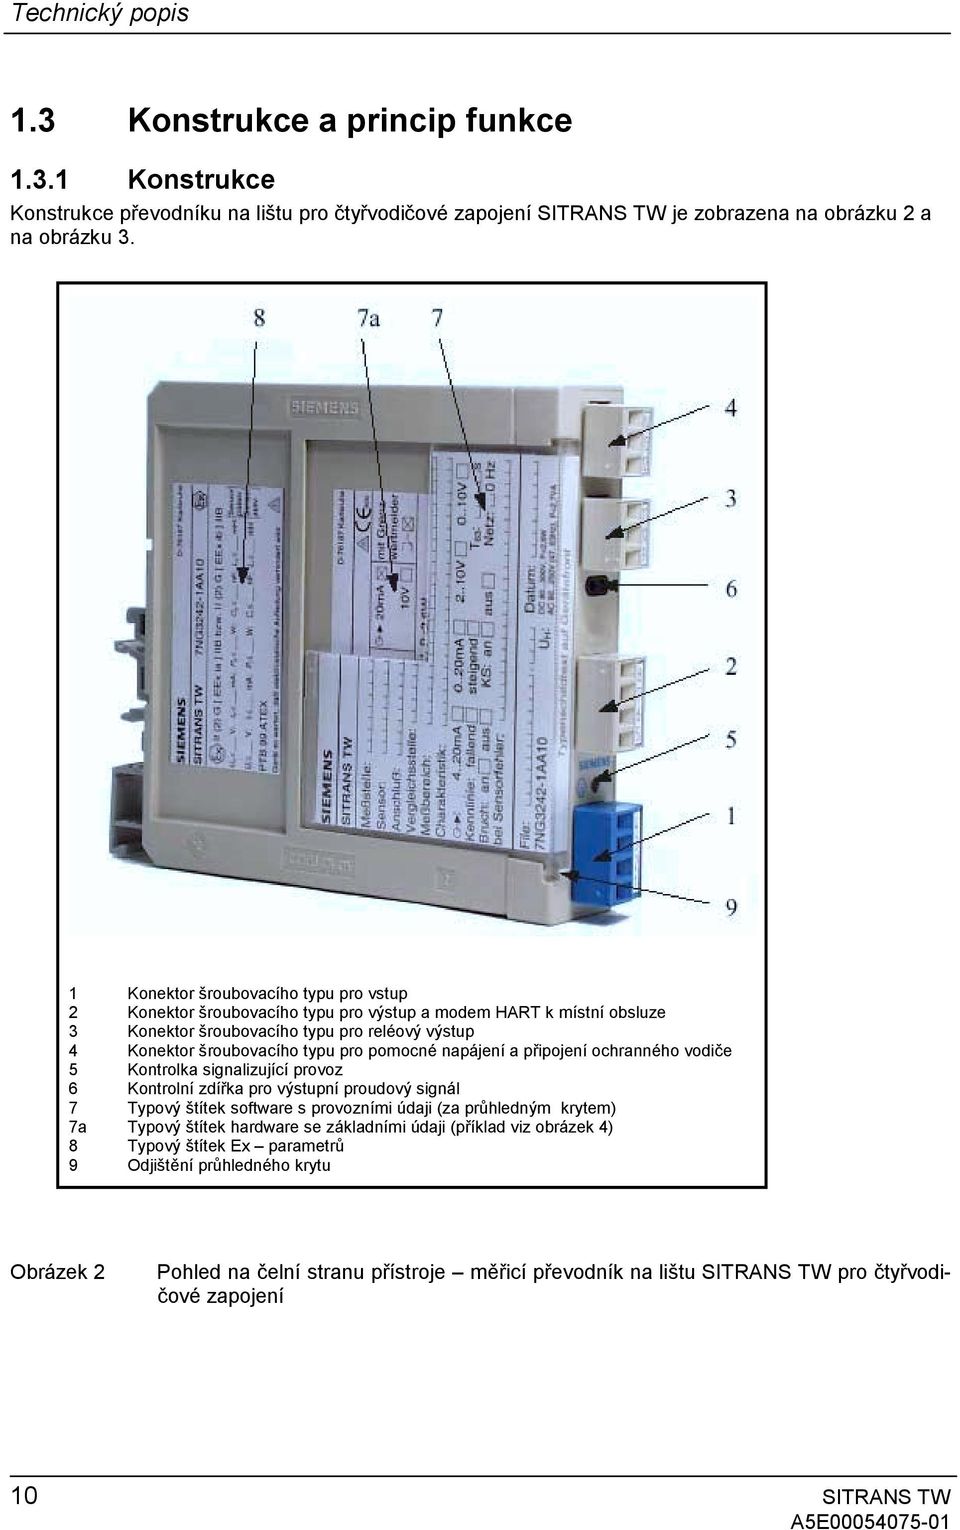 napájení a připojení ochranného vodiče 5 Kontrolka signalizující provoz 6 Kontrolní zdířka pro výstupní proudový signál 7 Typový štítek software s provozními údaji (za průhledným krytem) 7a Typový